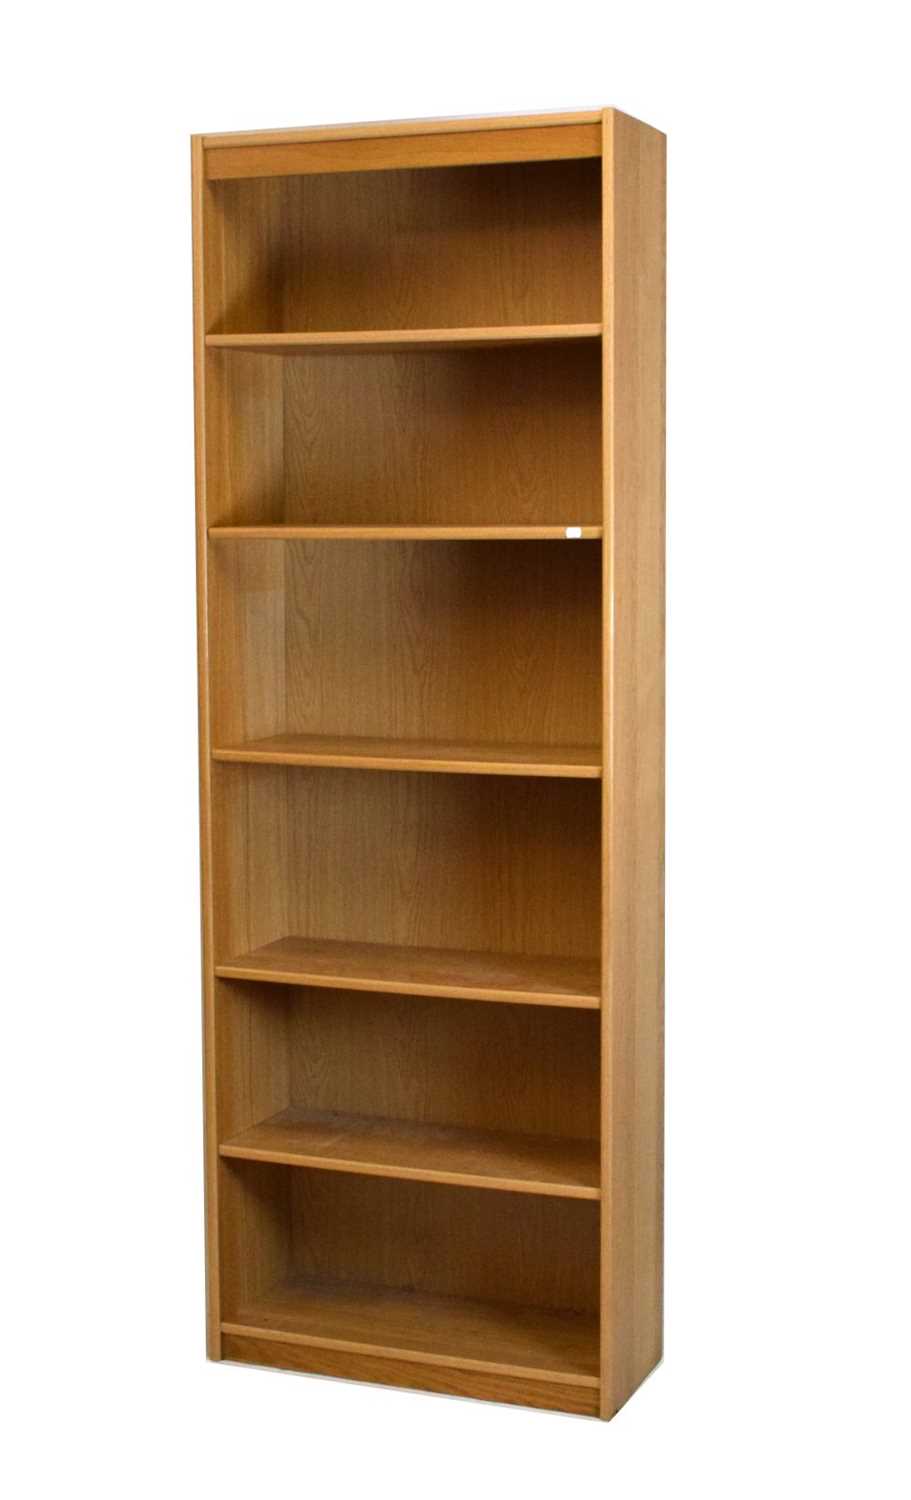 Modern oak open front bookcase